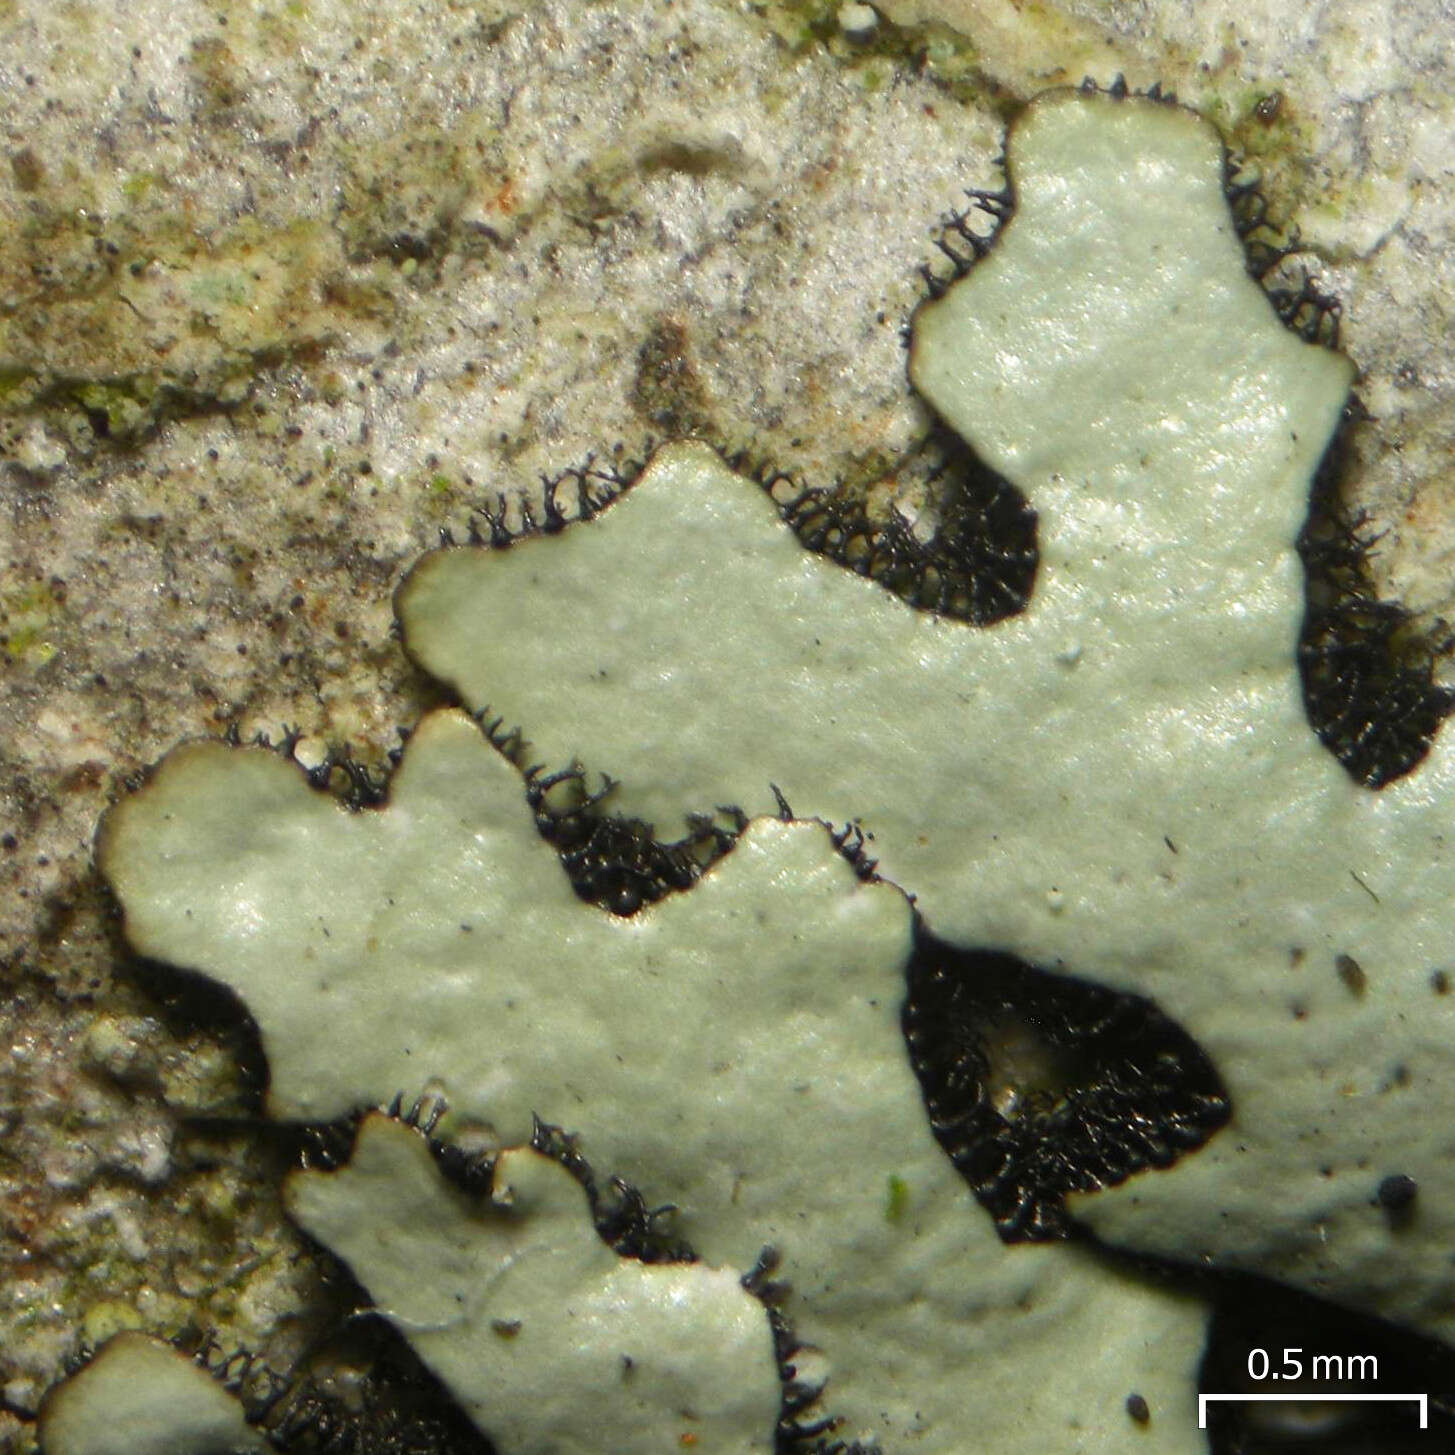 Image of bulbothrix lichen